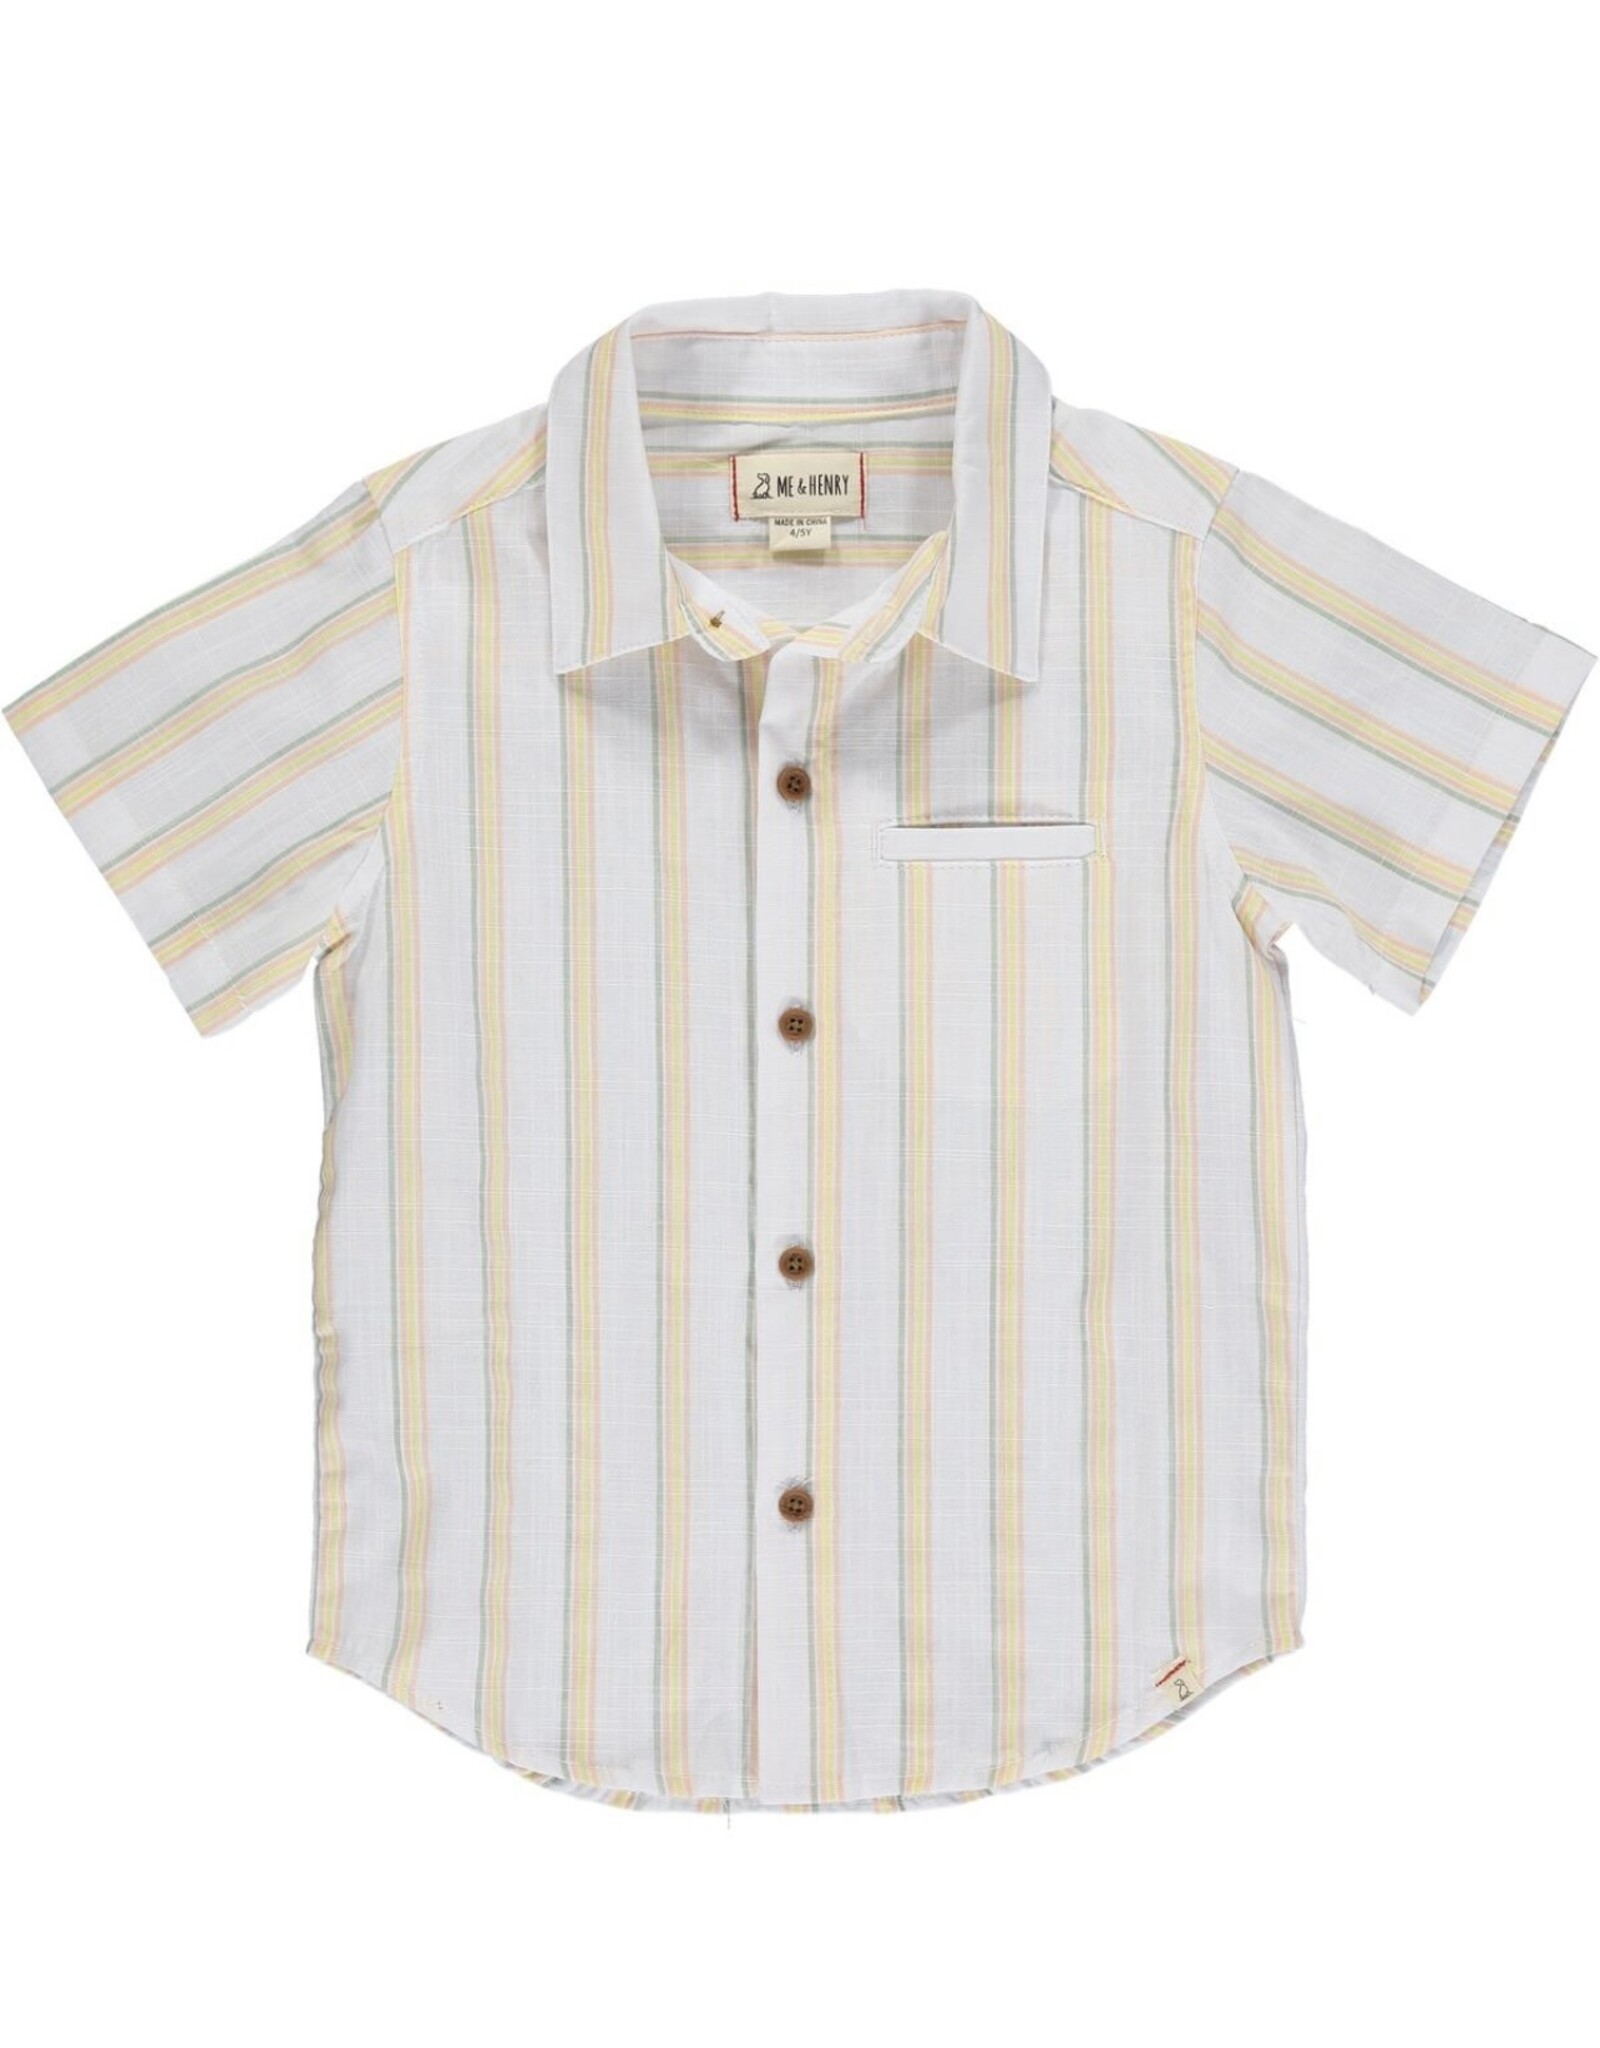 Me & Henry Me & Henry- Newport S/S Shirt: Sage/Gold/Orange Stripe